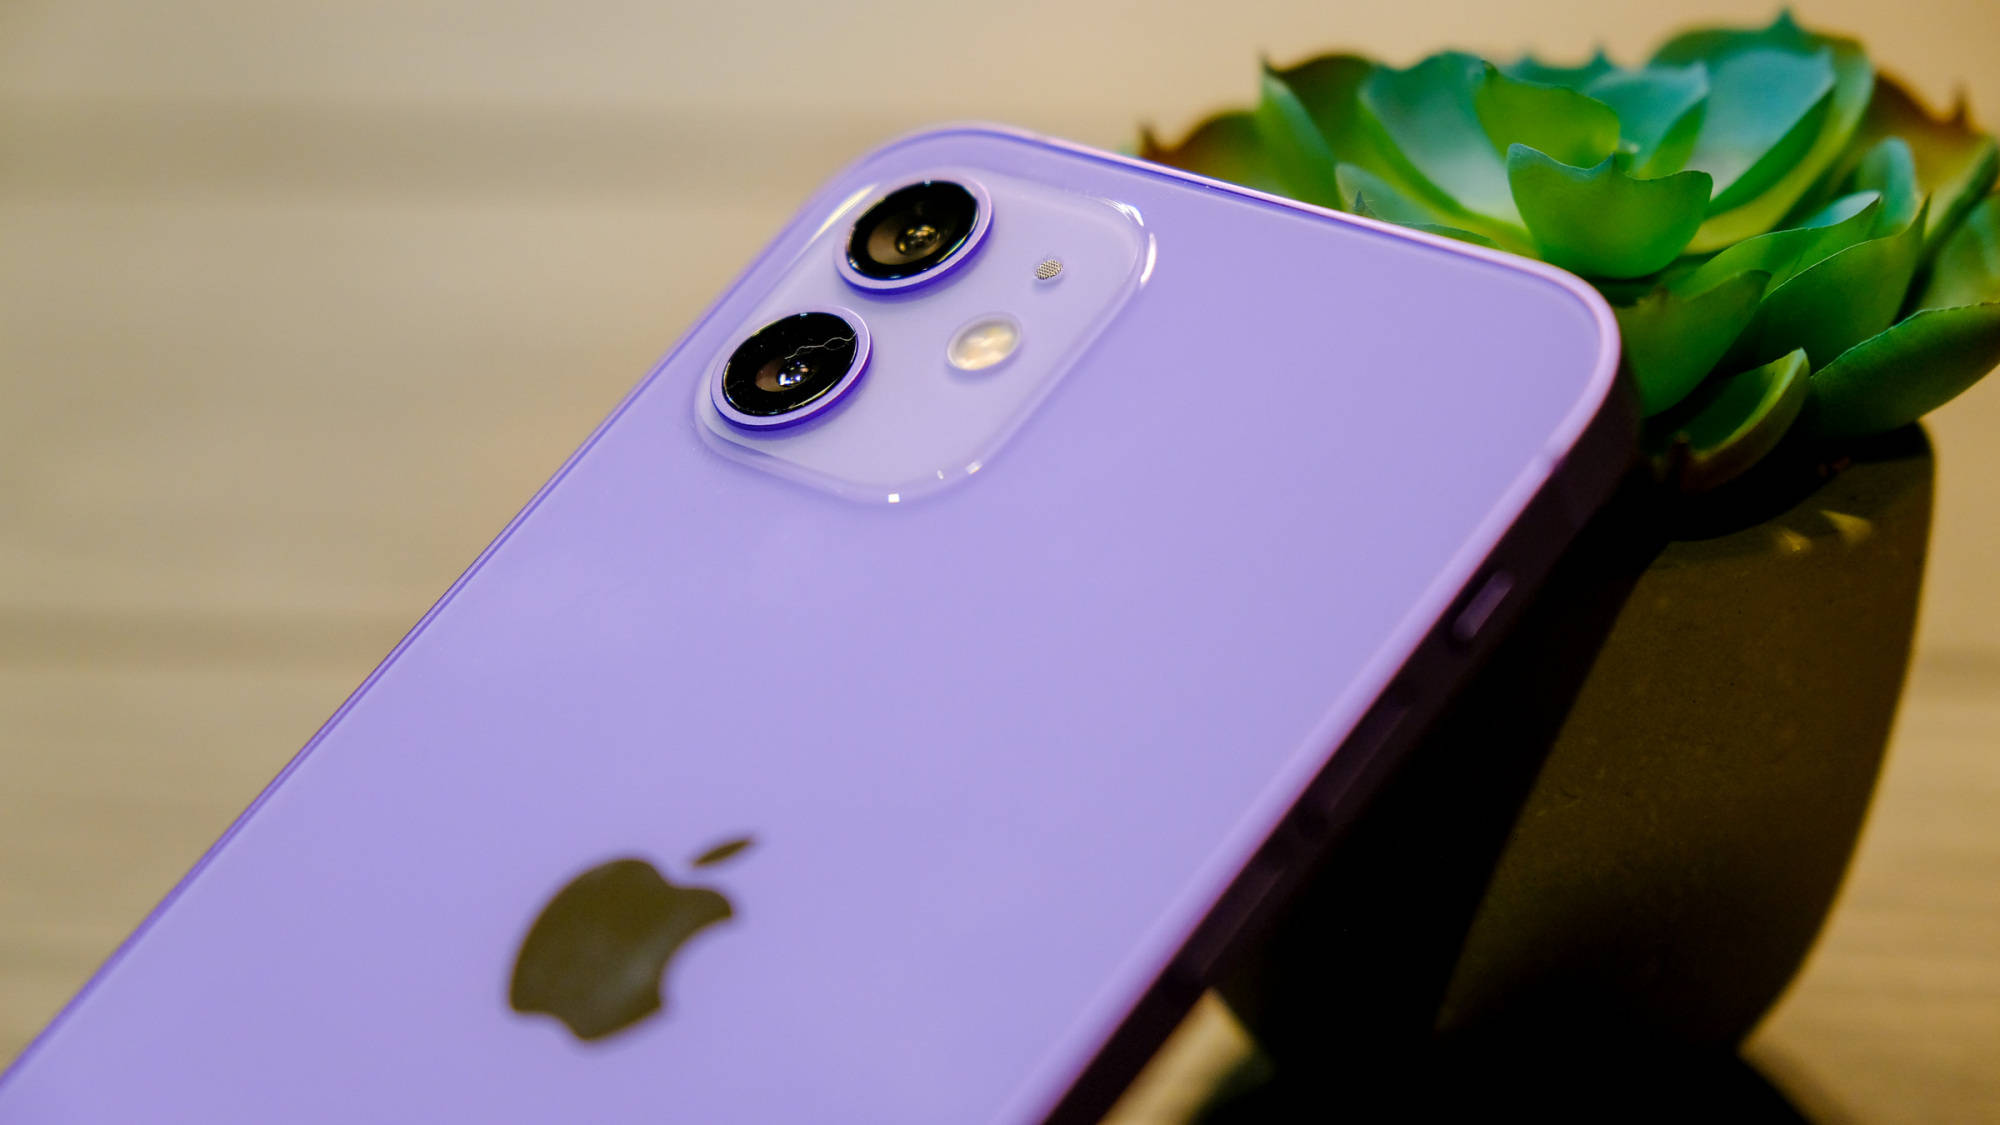 原创紫色iphone12最新价格确认,开售直接降价,128gb版本售价亲民